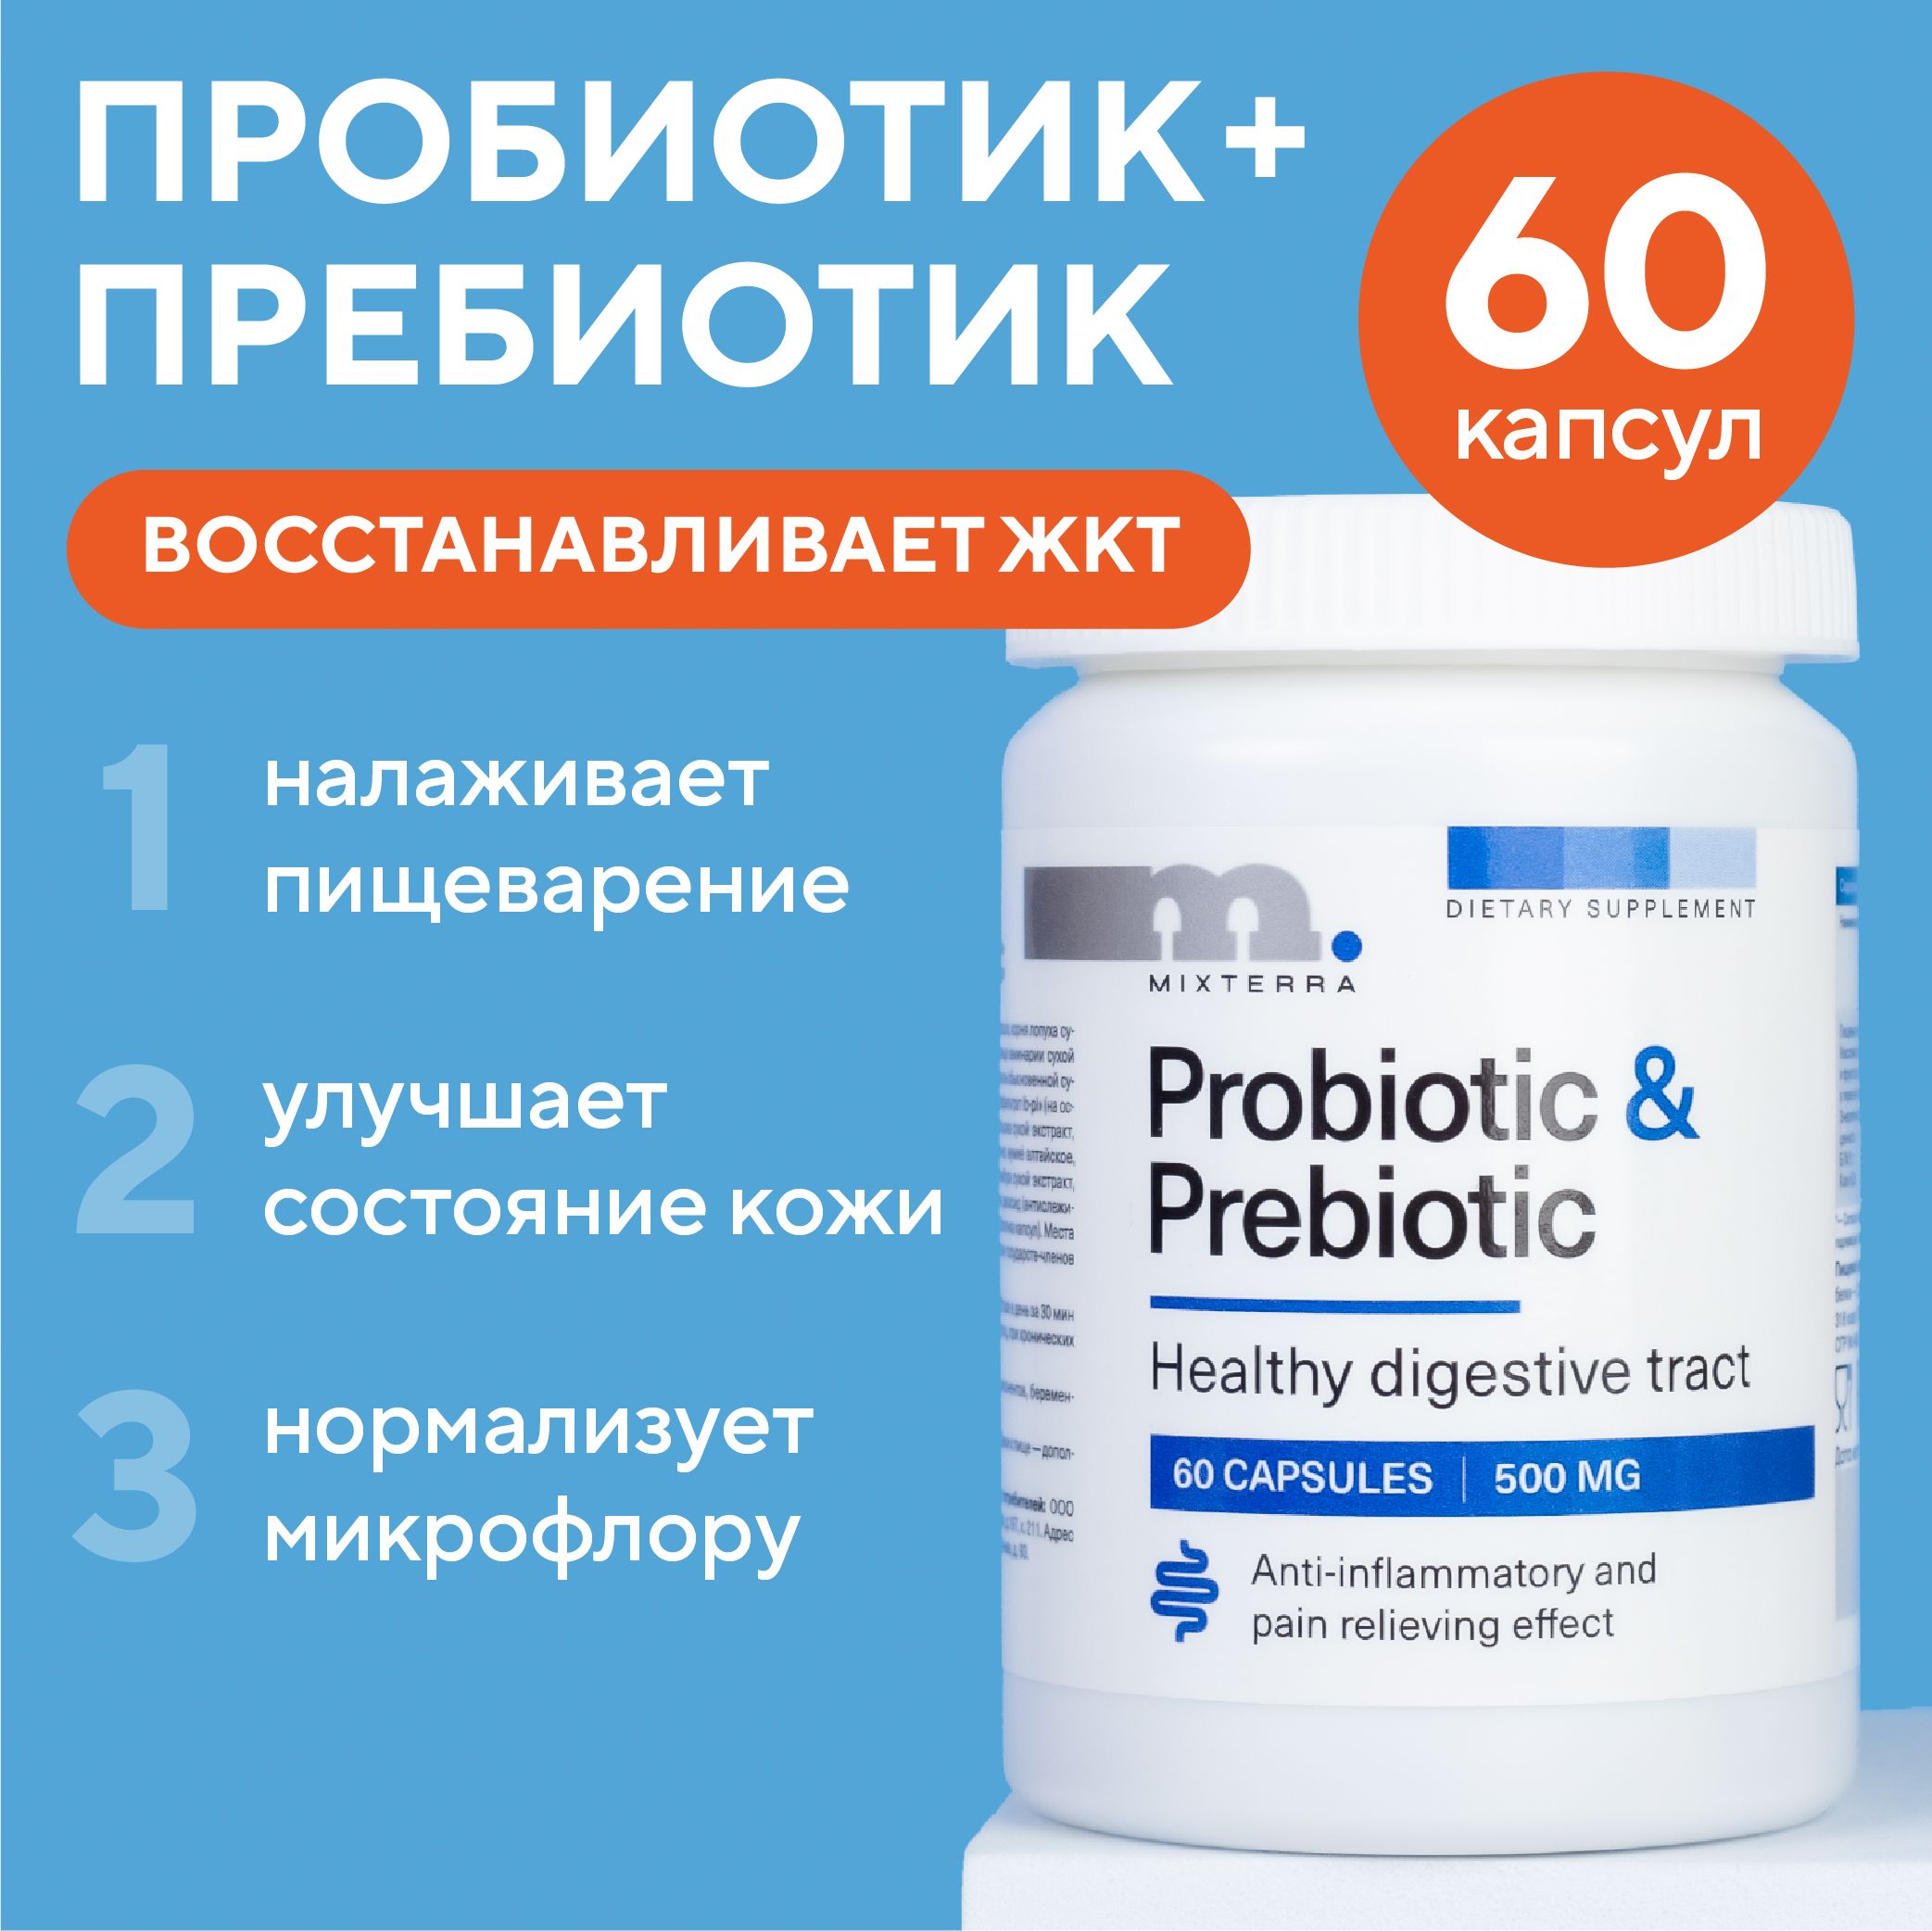 ПробиотикиипребиотикидляпищеваренияЖКТ,восстановлениябалансакишечноймикрофлоры60шт